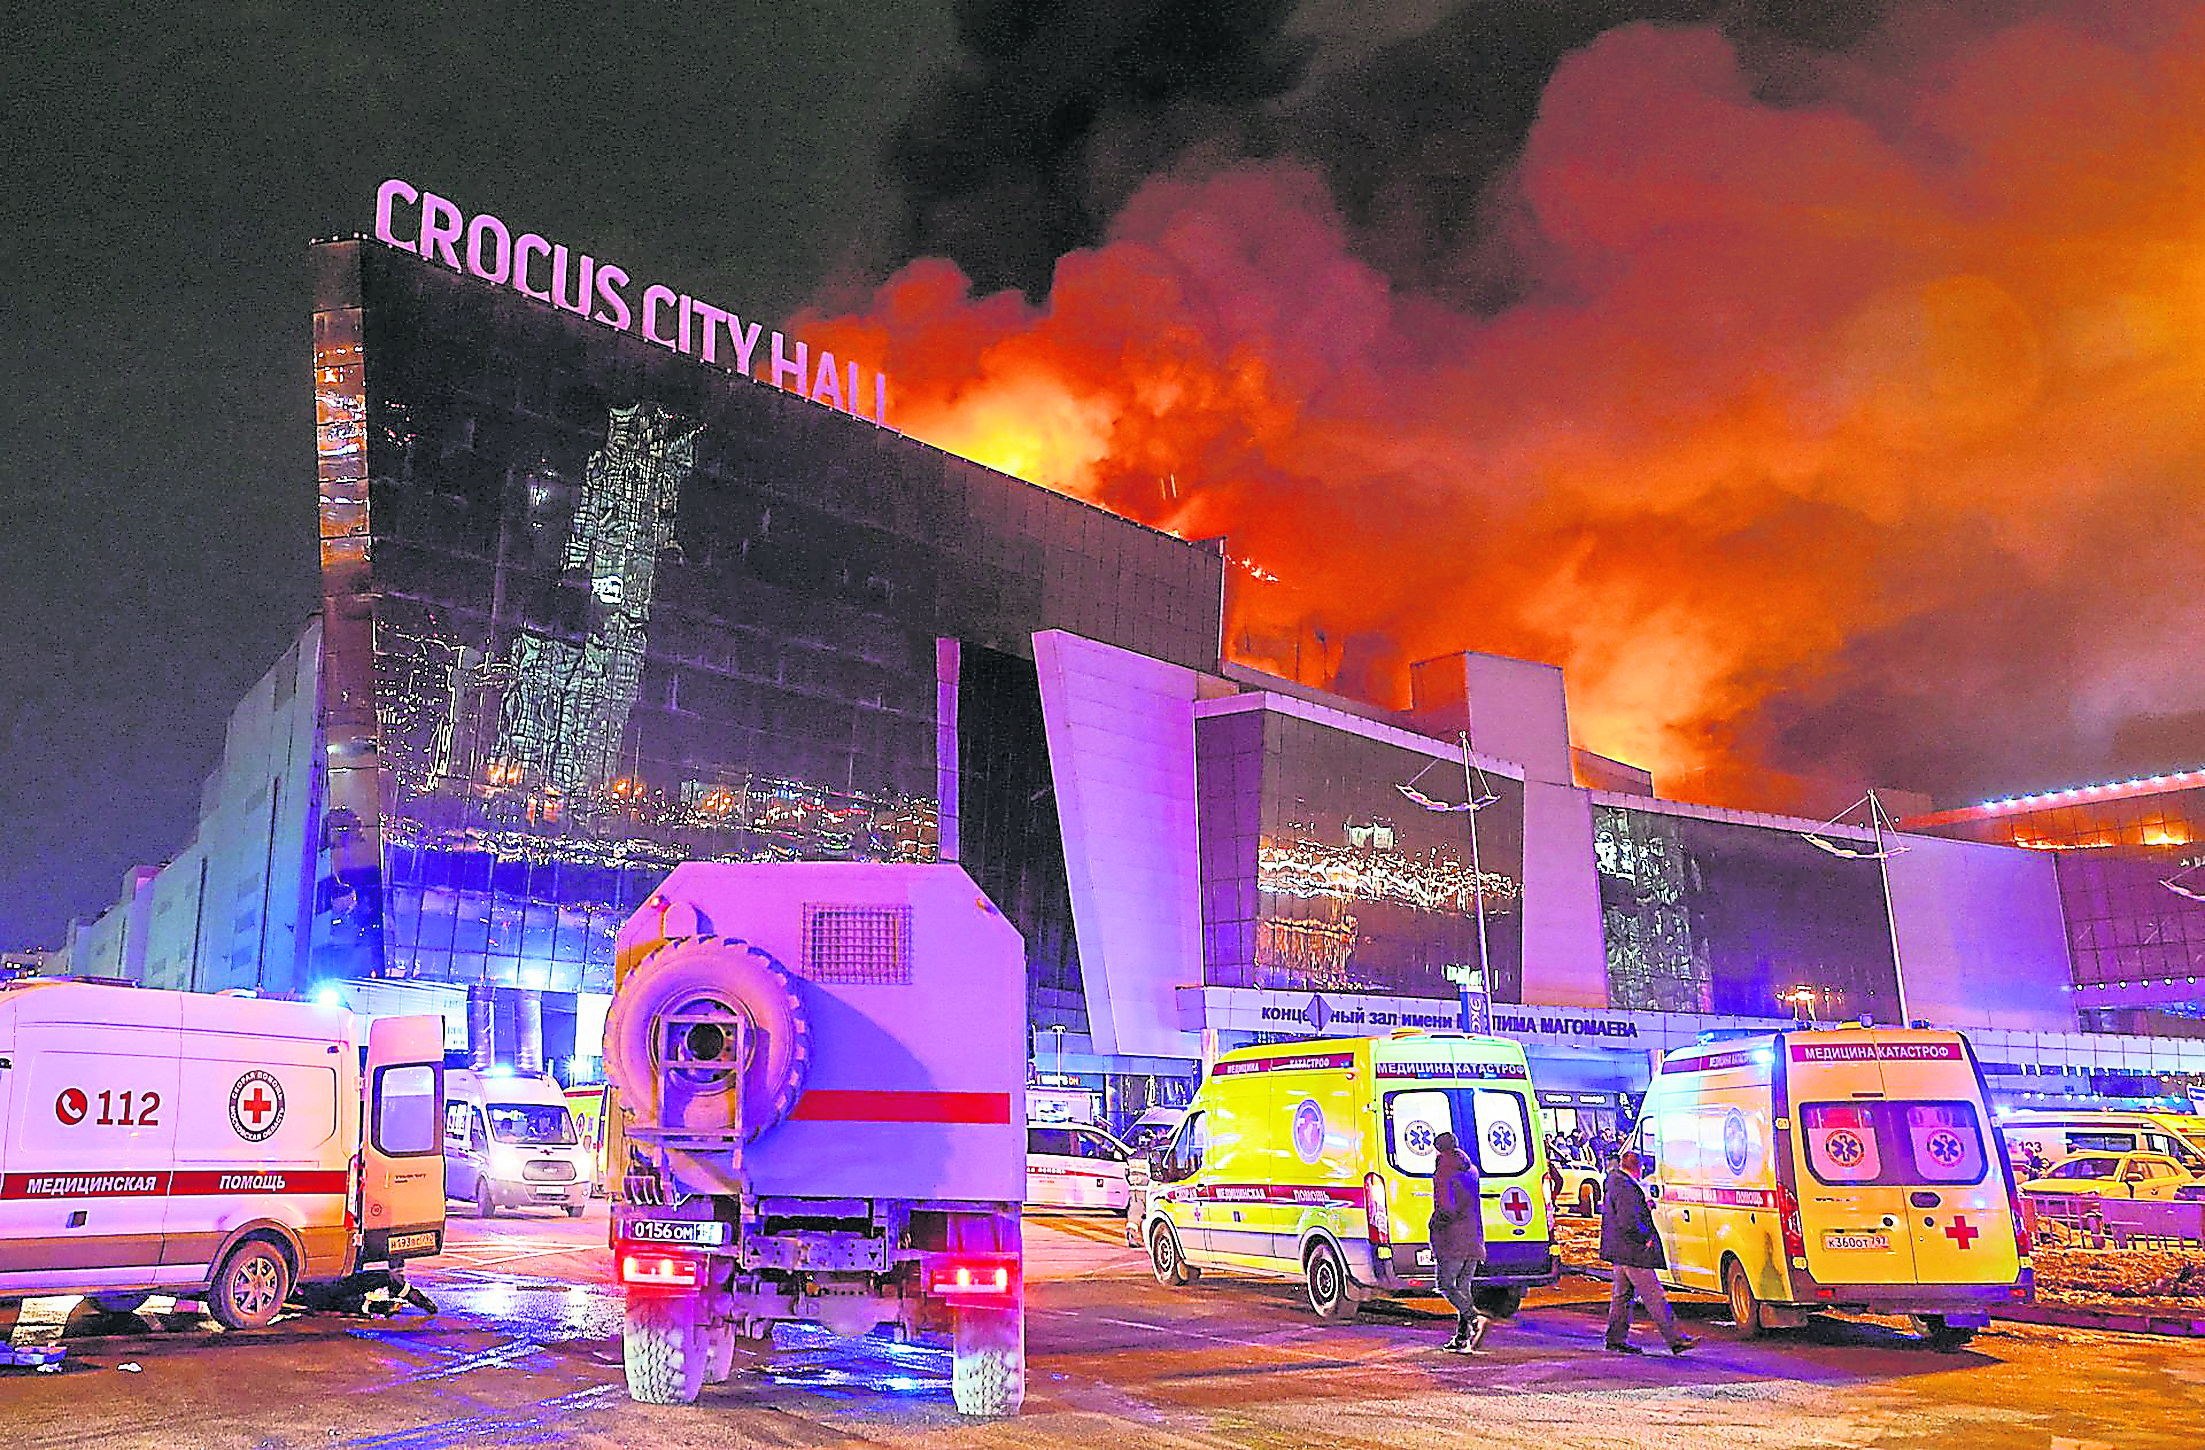  音樂廳的建築物冒出火光和濃煙，大批警員及救護車到場支援。